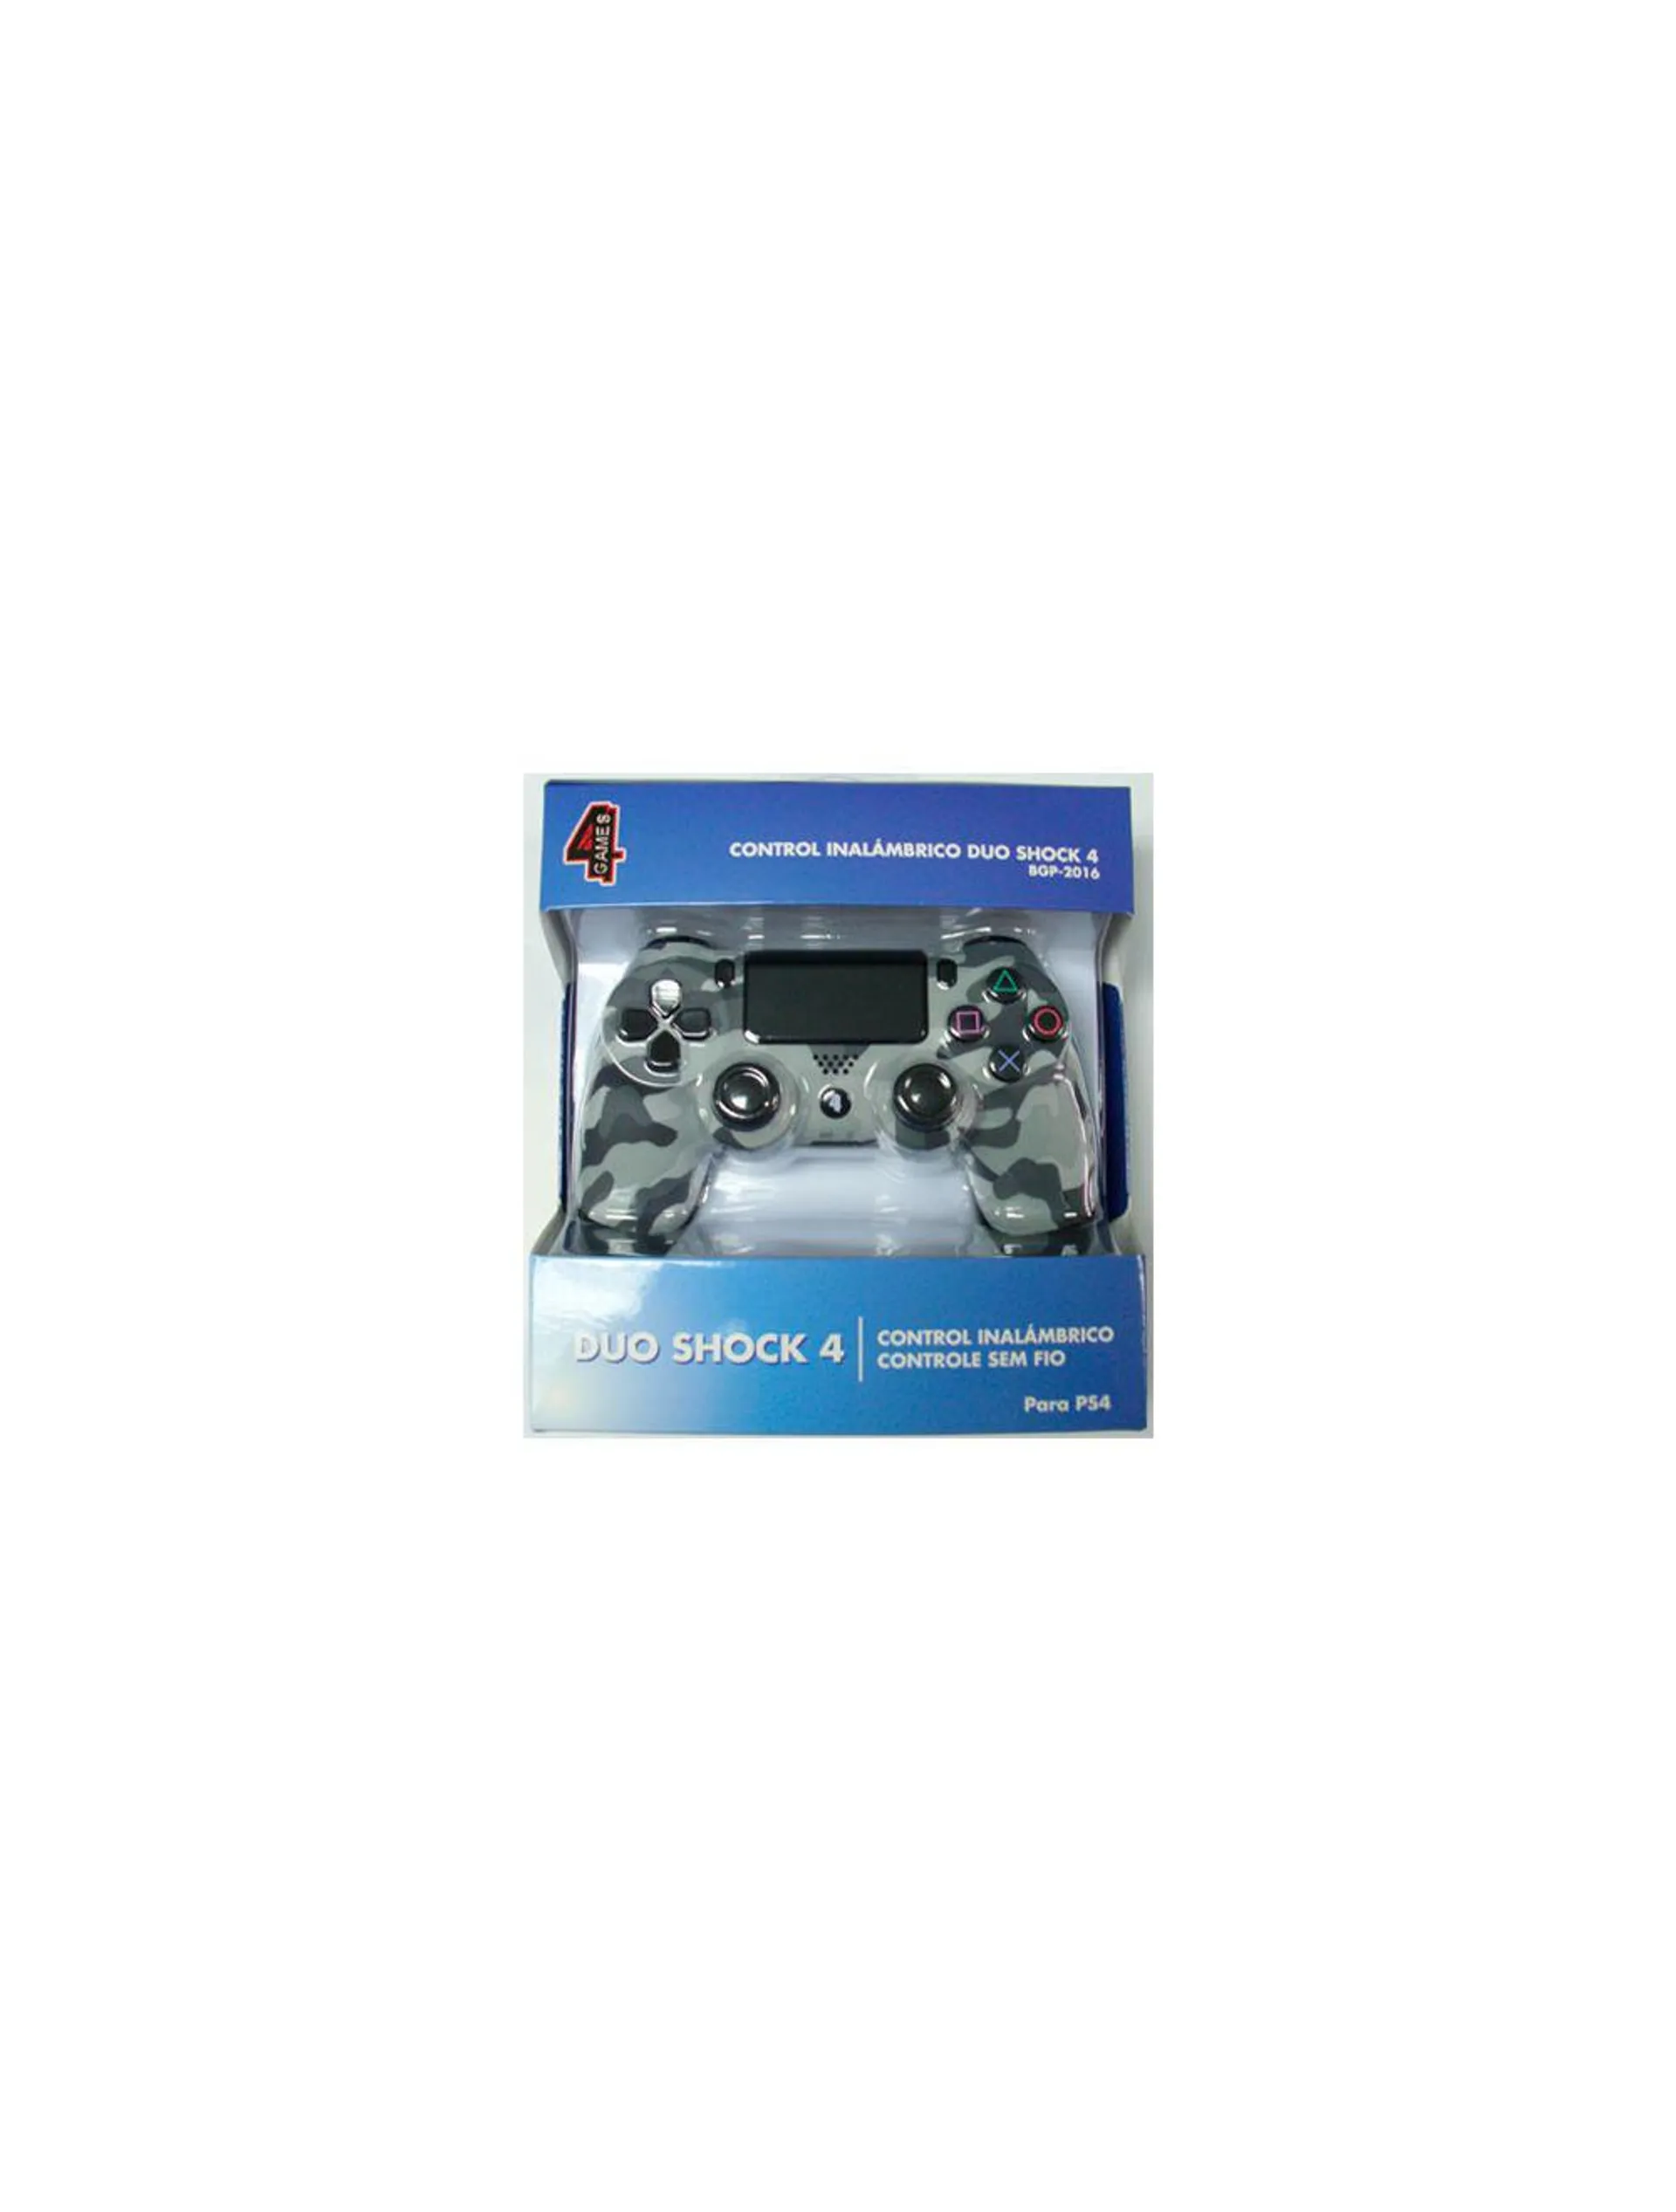 Control Duo Shock 4 Games Camuflado PS4